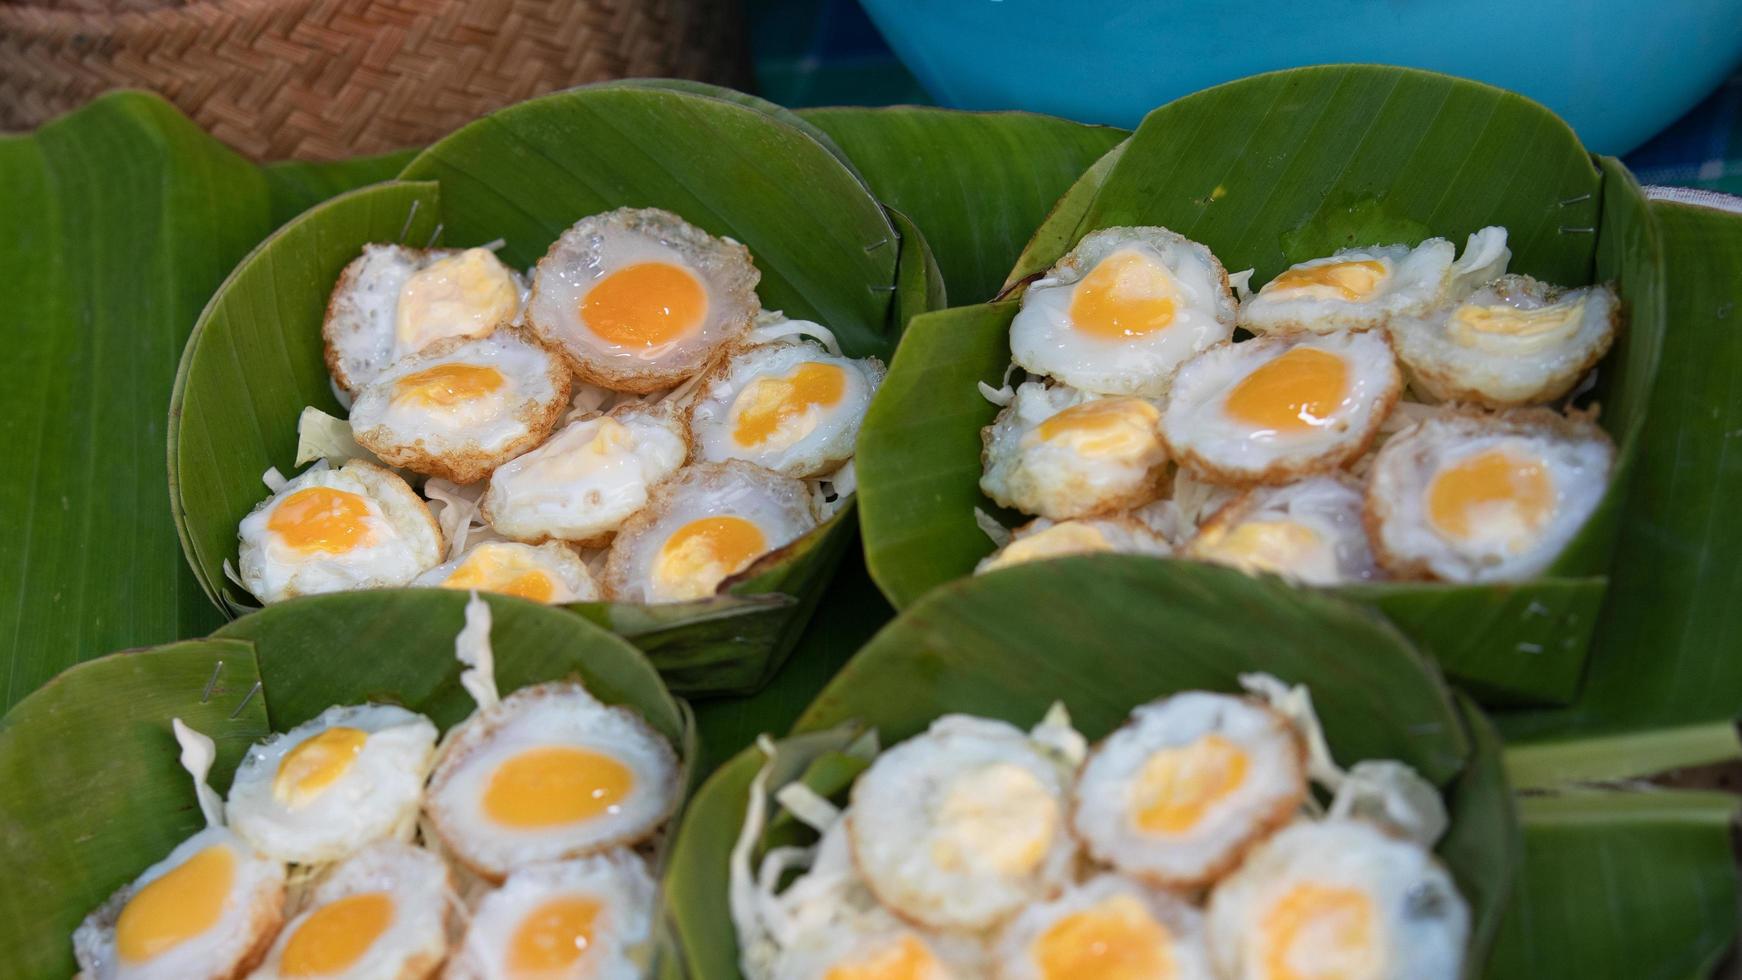 huevos de codorniz fritos en hojas de plátano verde krathong. comida callejera tailandesa popular para comer con pimienta y salsa de soja foto